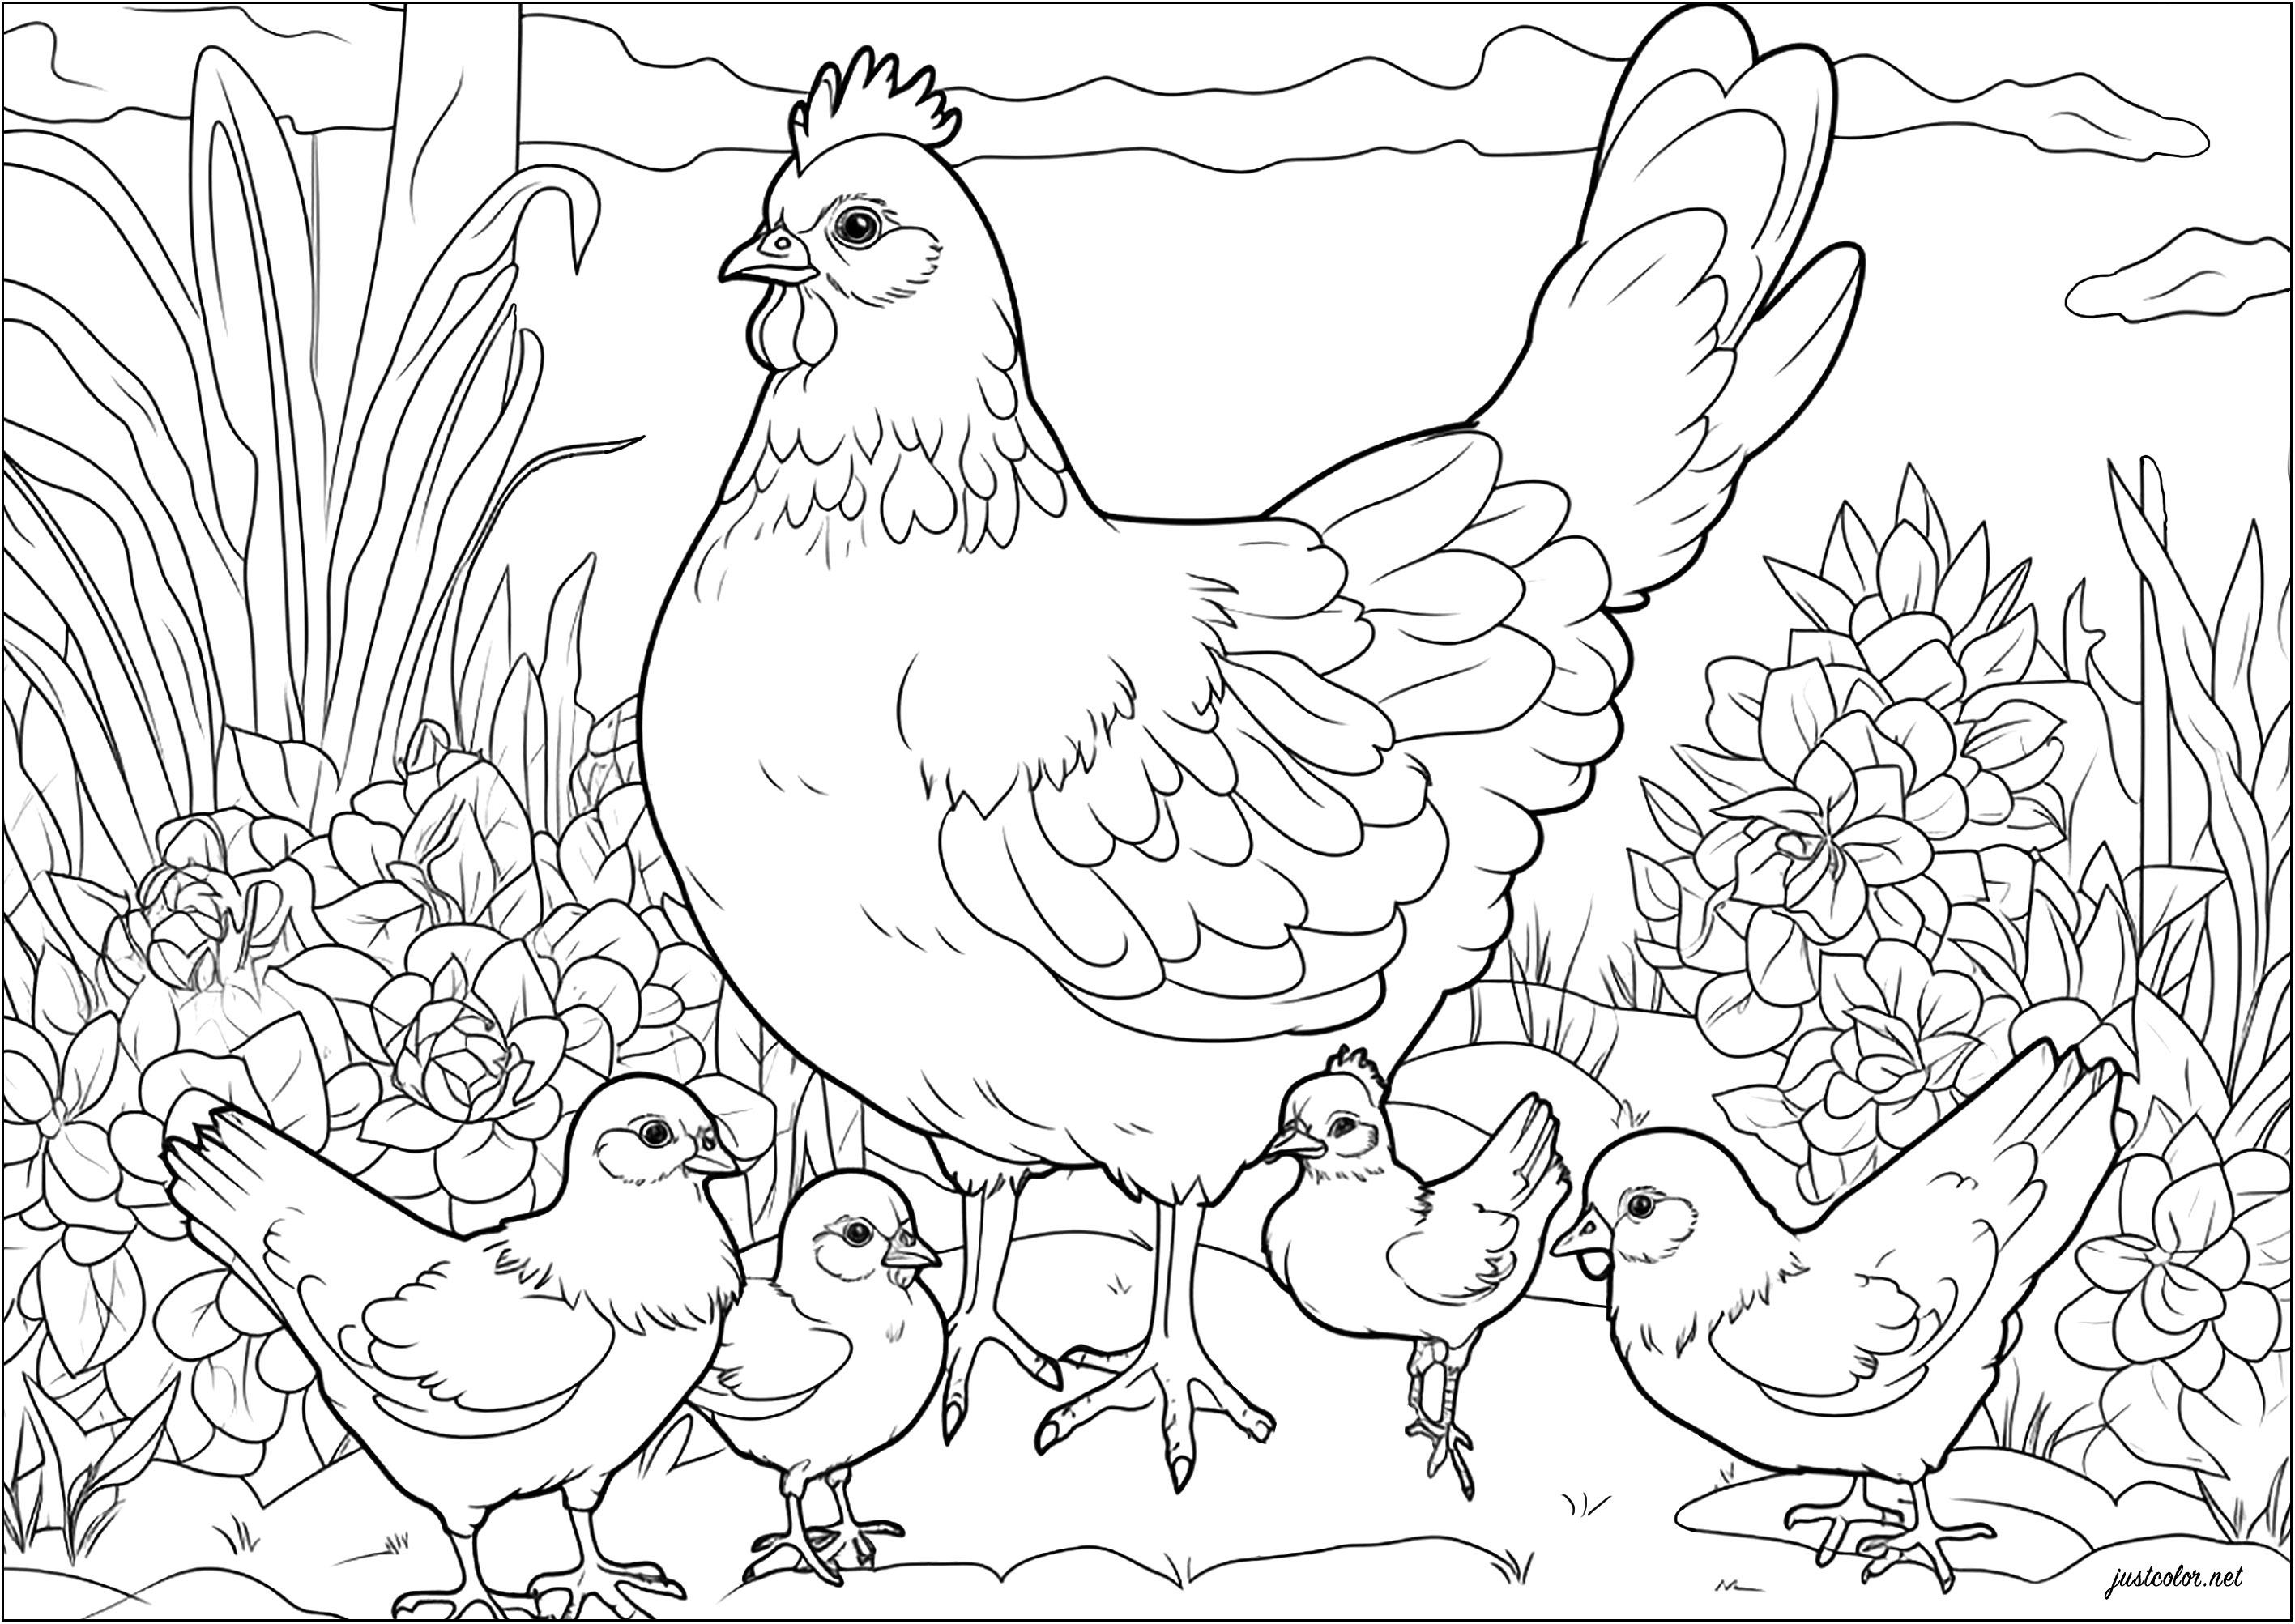 Colorazione di una gallina e dei suoi pulcini. Questa gallina protegge con orgoglio i suoi piccoli.
